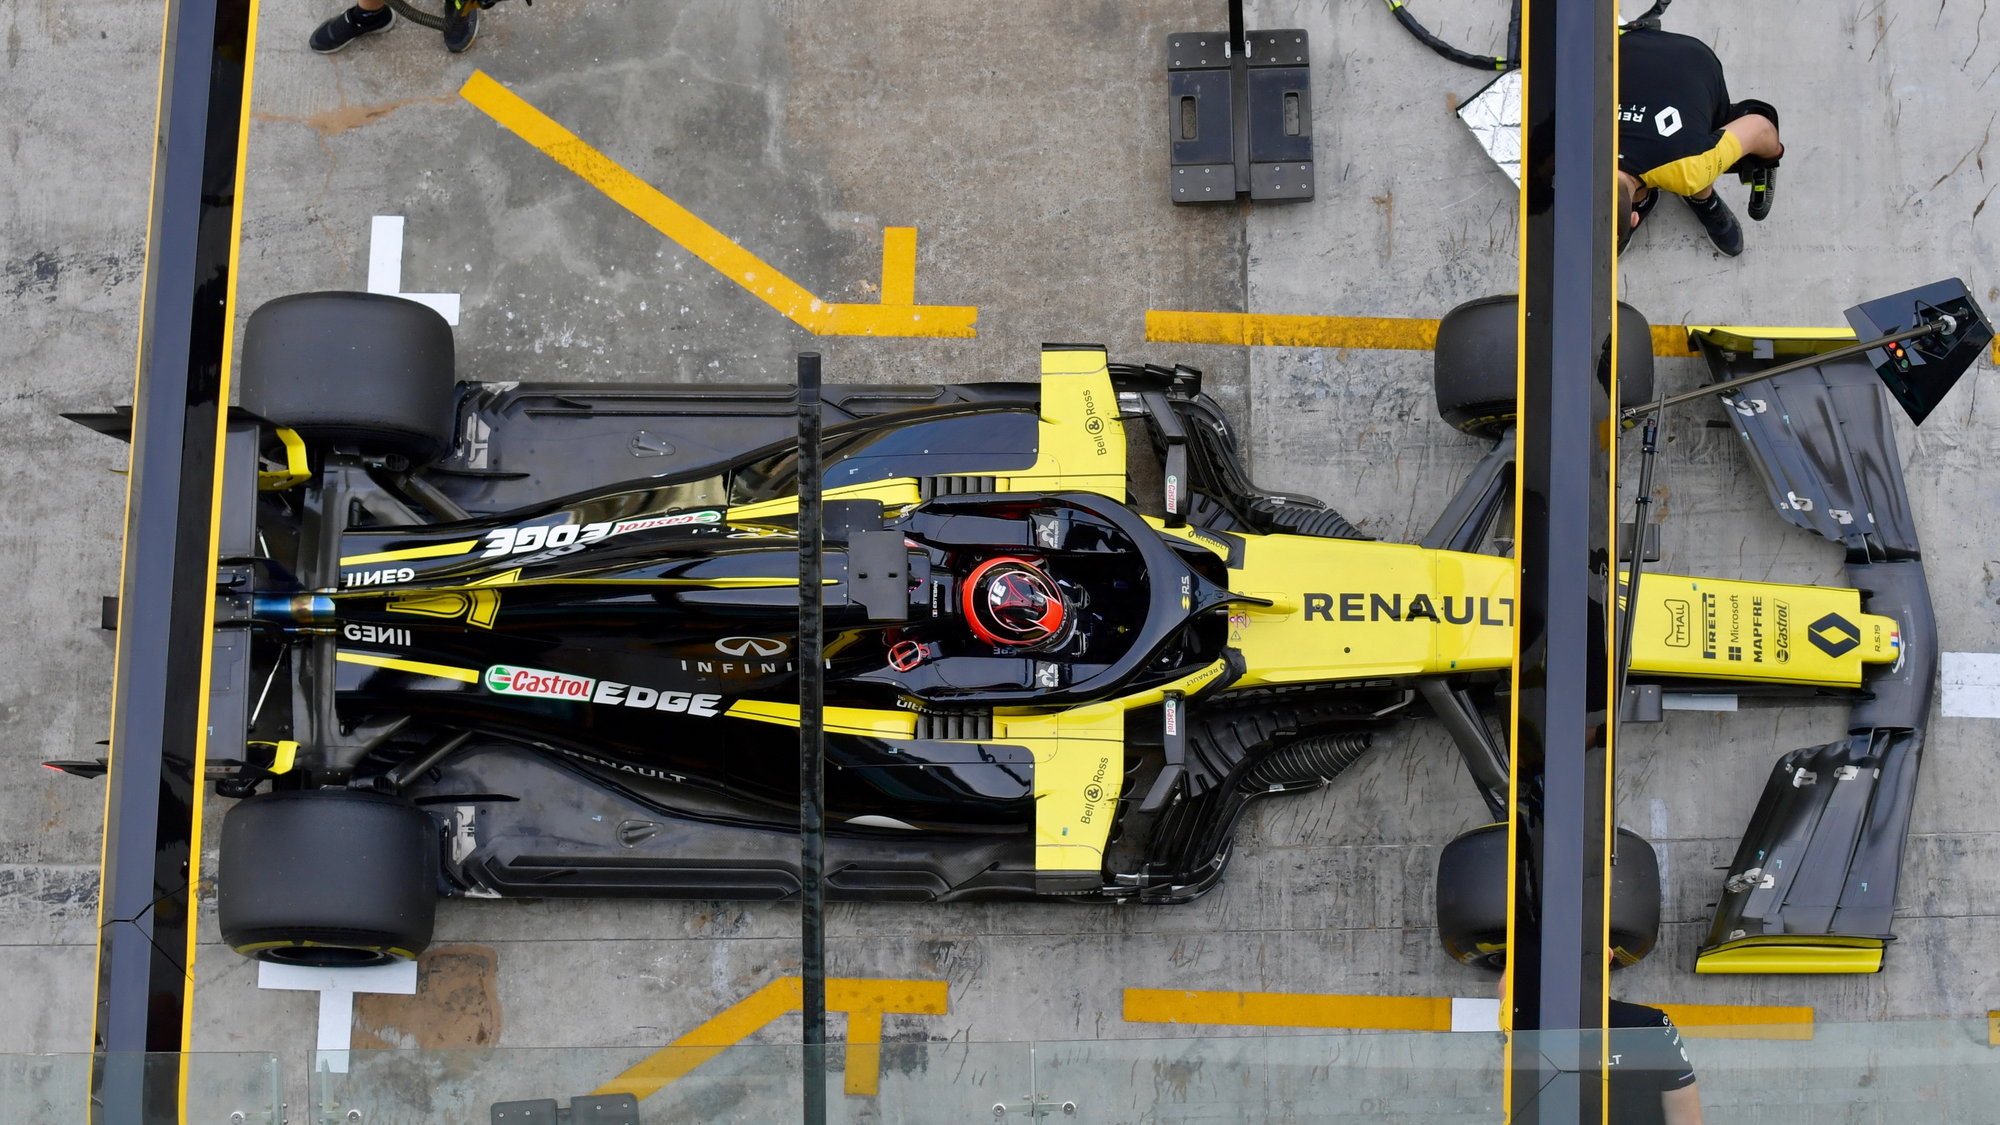 Estaban Ocon poprvé ve voze Renault po sezóně 2019 během testu pneumatik v Abú Zabí